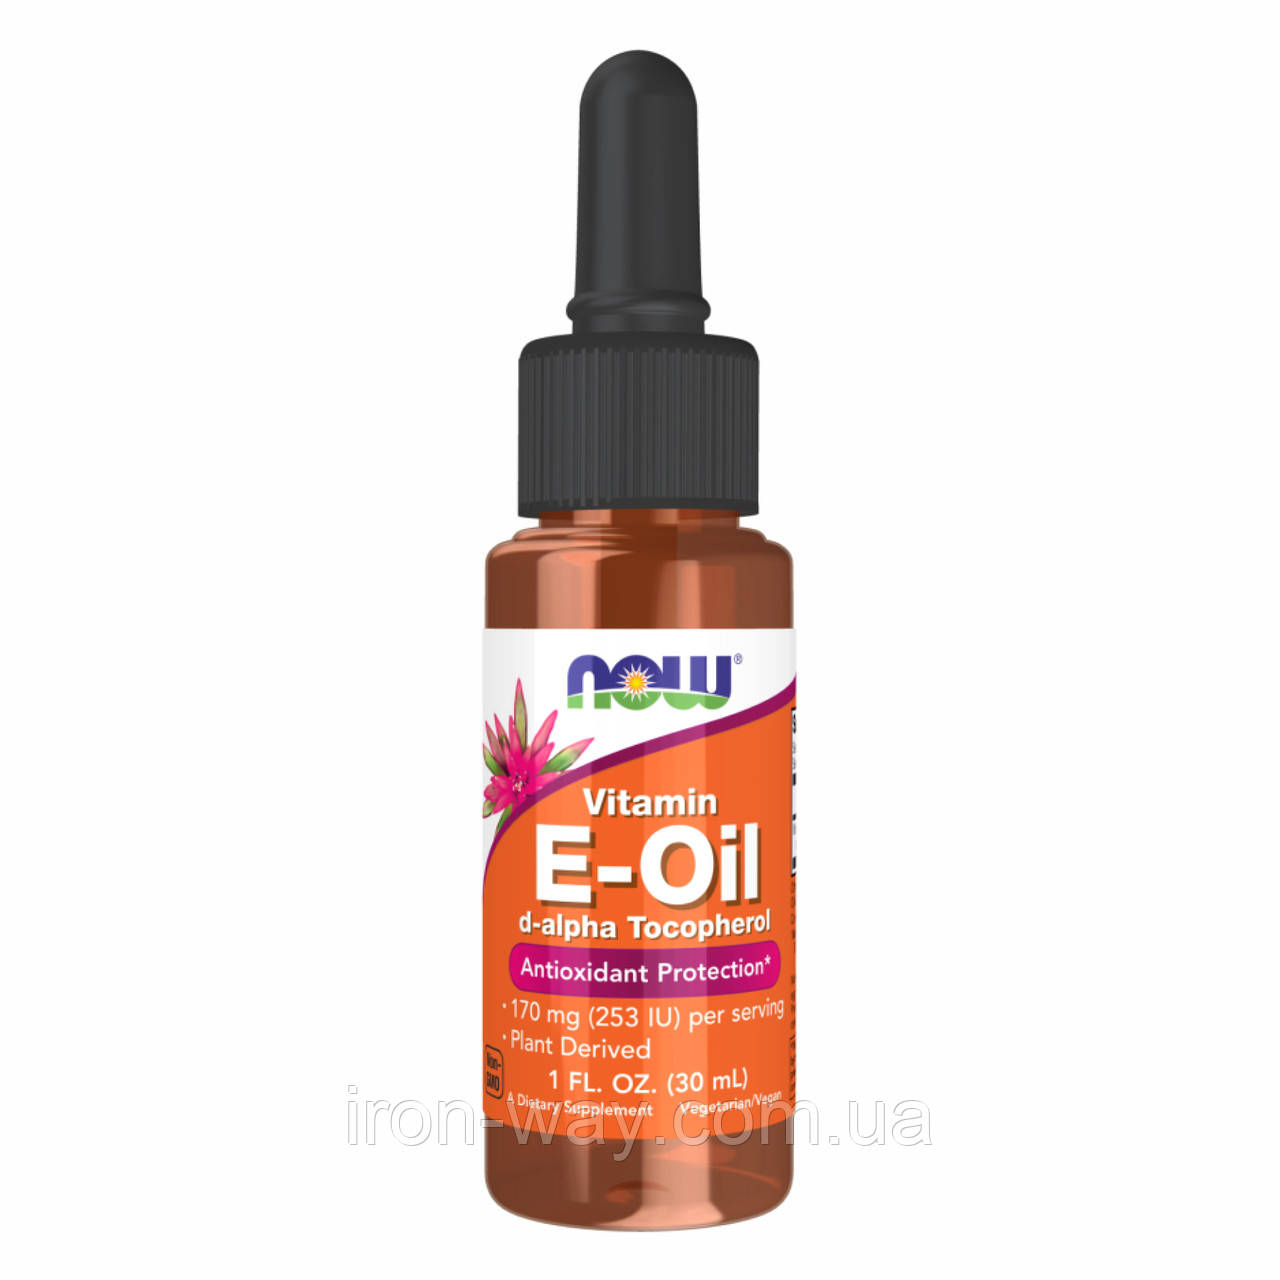 NOW Vitamin E Oil DA 30ml (1oz)